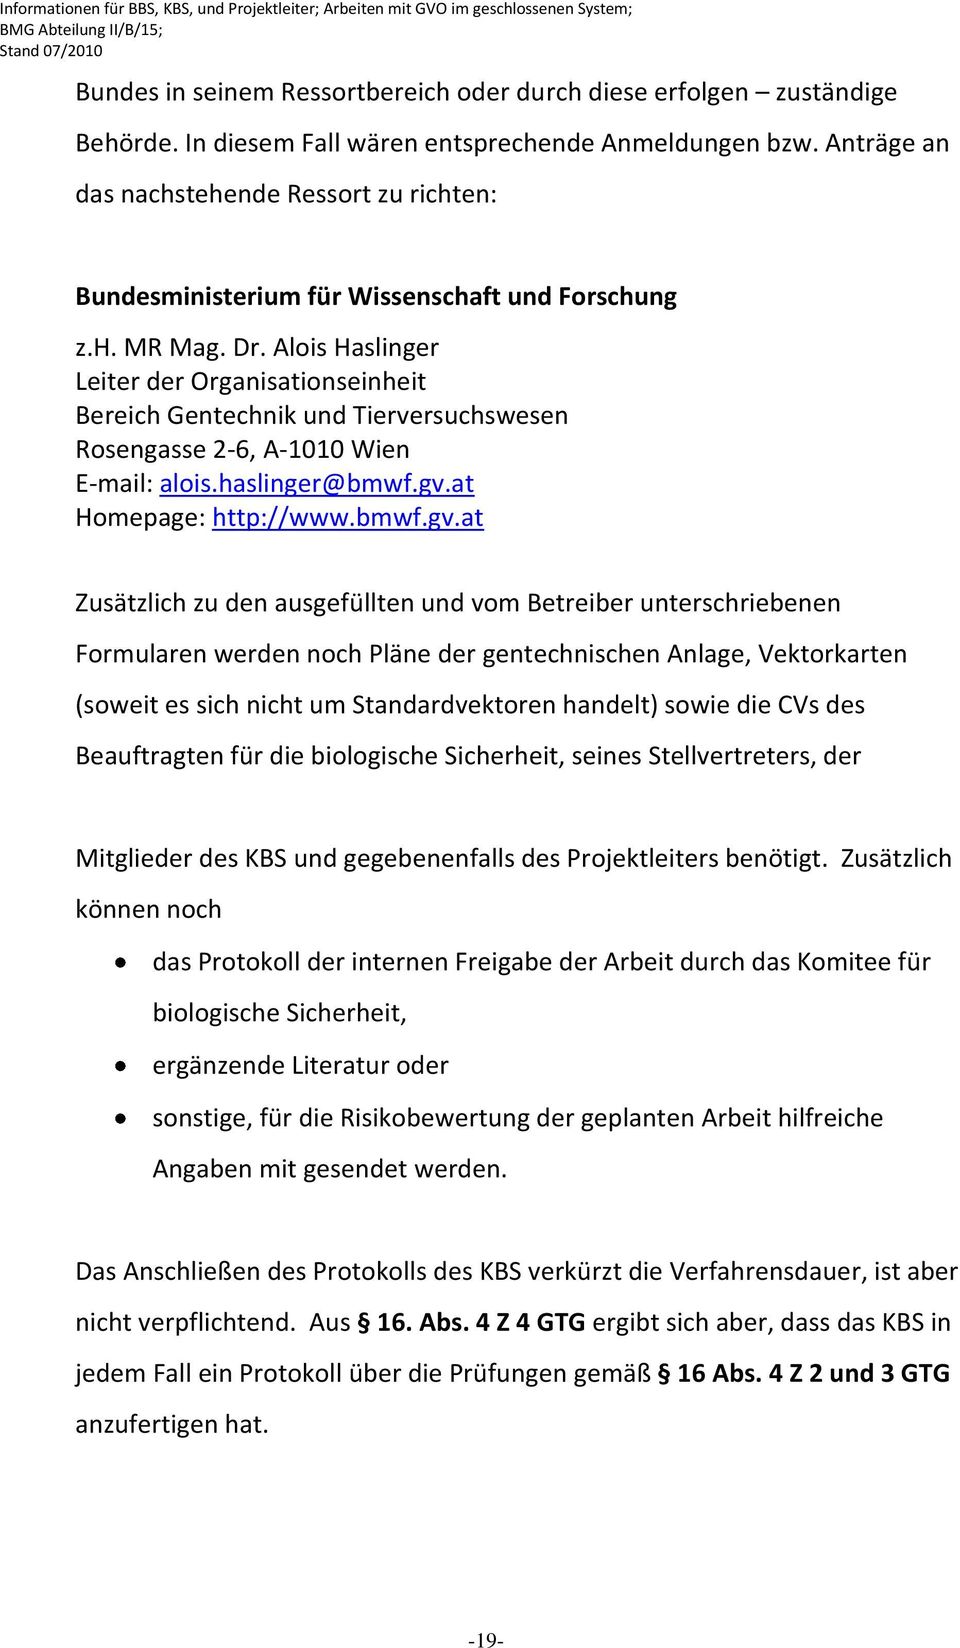 Alois Haslinger Leiter der Organisationseinheit Bereich Gentechnik und Tierversuchswesen Rosengasse 2-6, A-1010 Wien E-mail: alois.haslinger@bmwf.gv.